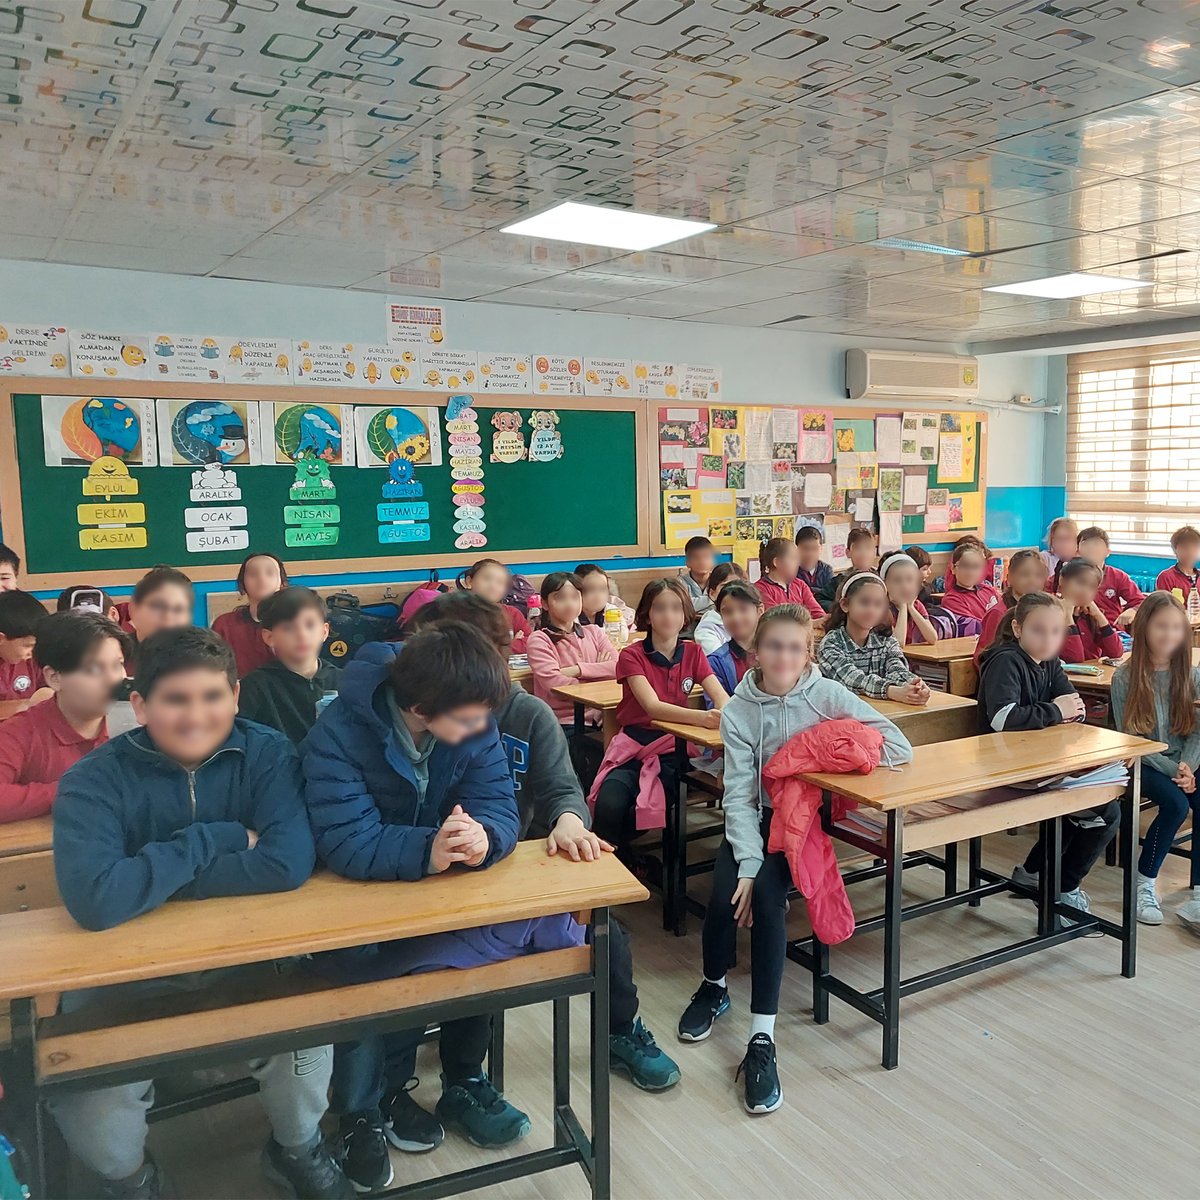 ENKA İstanbul İlkokulu 4. sınıf öğrencileri PYPx Eğitim grubu, PYP projesi kapsamında Eyüpsultan ilçesinde bulunan Mustafa Kemal İlkokuluna bir kütüphane kurdu! Aralarında mentor öğretmenlerin bulunduğu 9 öğrenciden oluşan bu grubun başarısını paylaşmaktan mutluluk duyuyoruz.